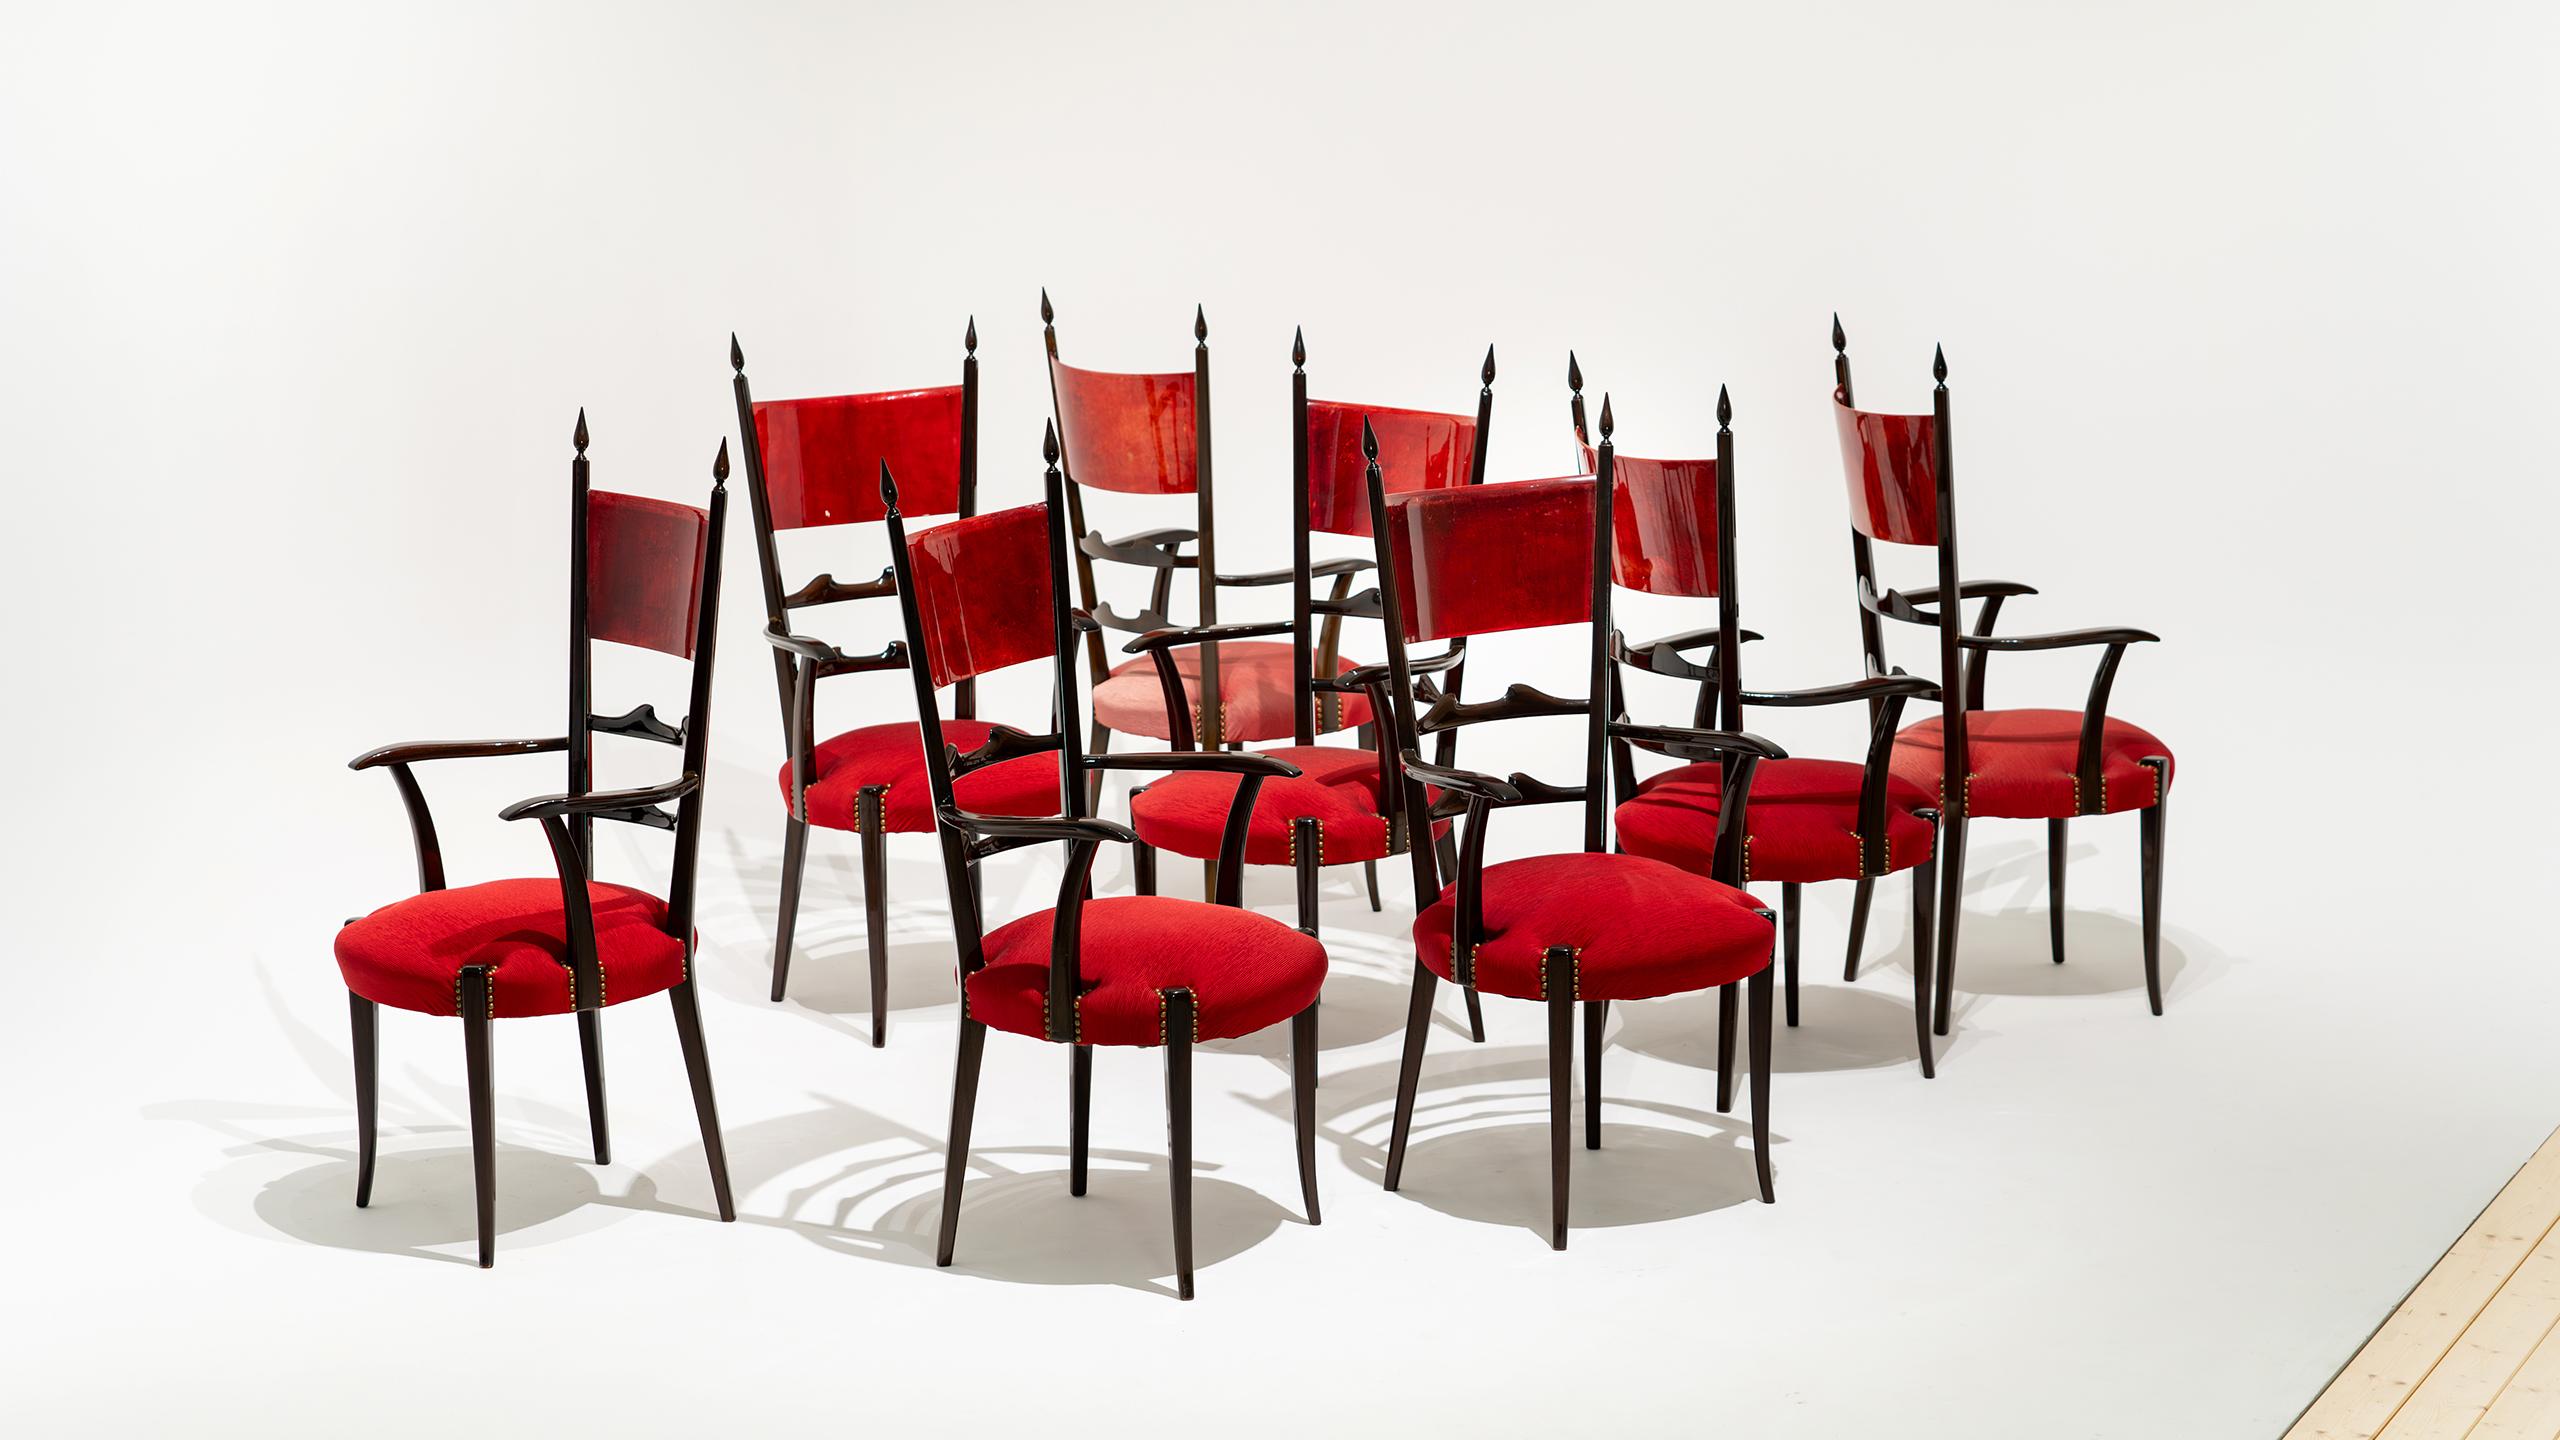 Ensemble de 8 chaises de salle à manger hautes à dossier en échelle d'Aldo Tura, 1962 pour Atélier Tura.

Les châssis des chaises sont en bois brillant et les dossiers sont en parchemin de peau de chèvre laqué rouge, appliqué à l'avant et à